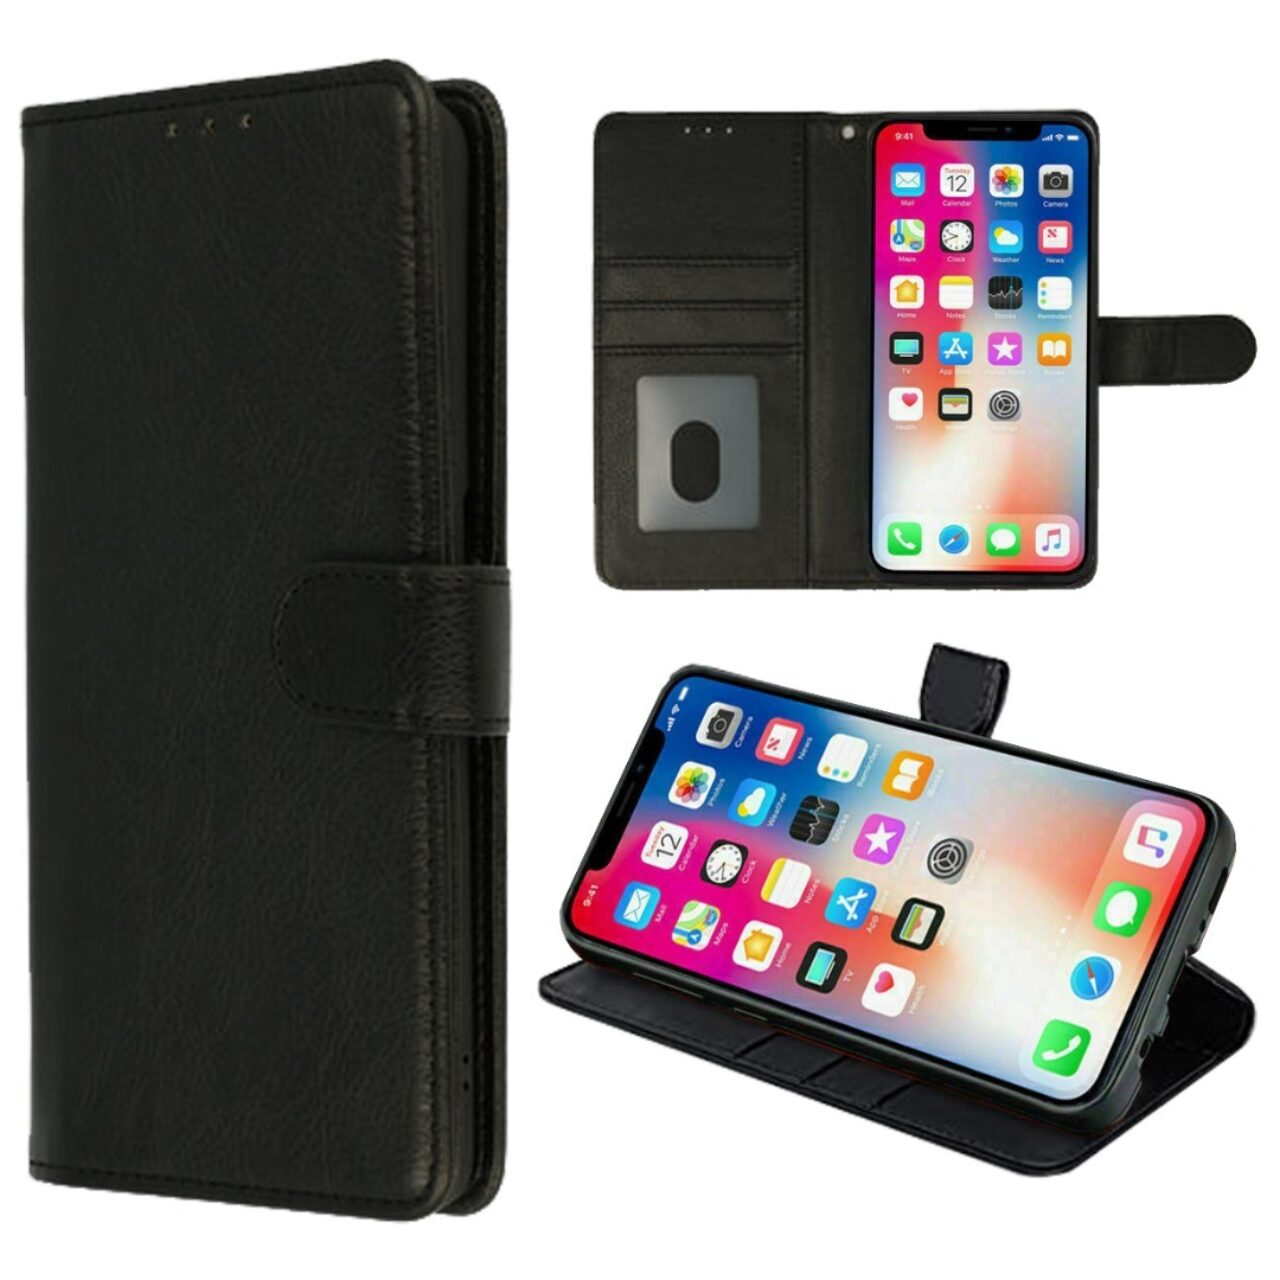 HQ boek zwart-hoesje-case-schutzhulle-coque-cover-smartphone-book case-boekmodel